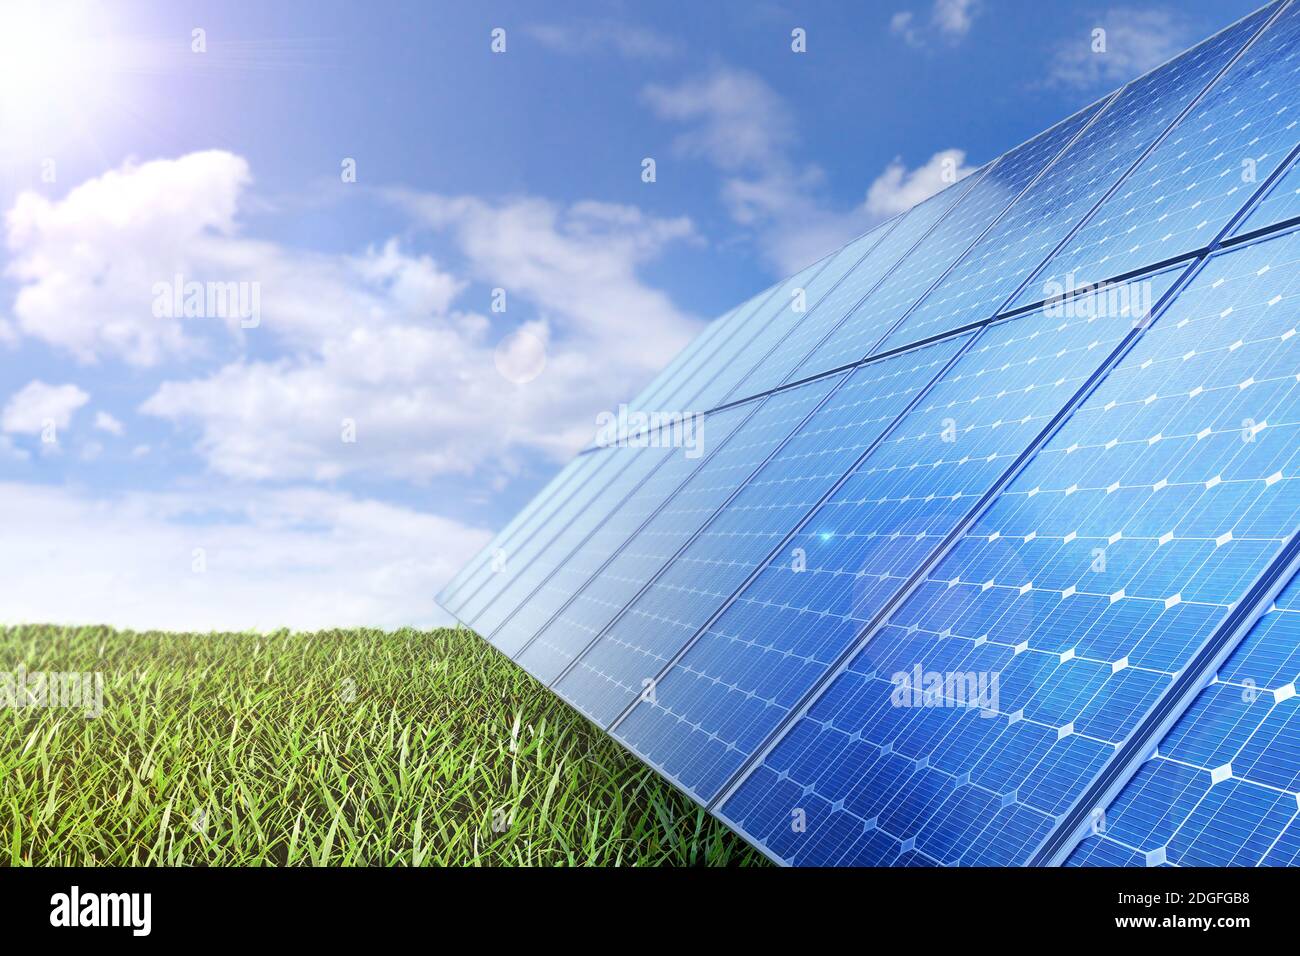 Panel solar produce ecológico de la energía del sol. Foto de stock